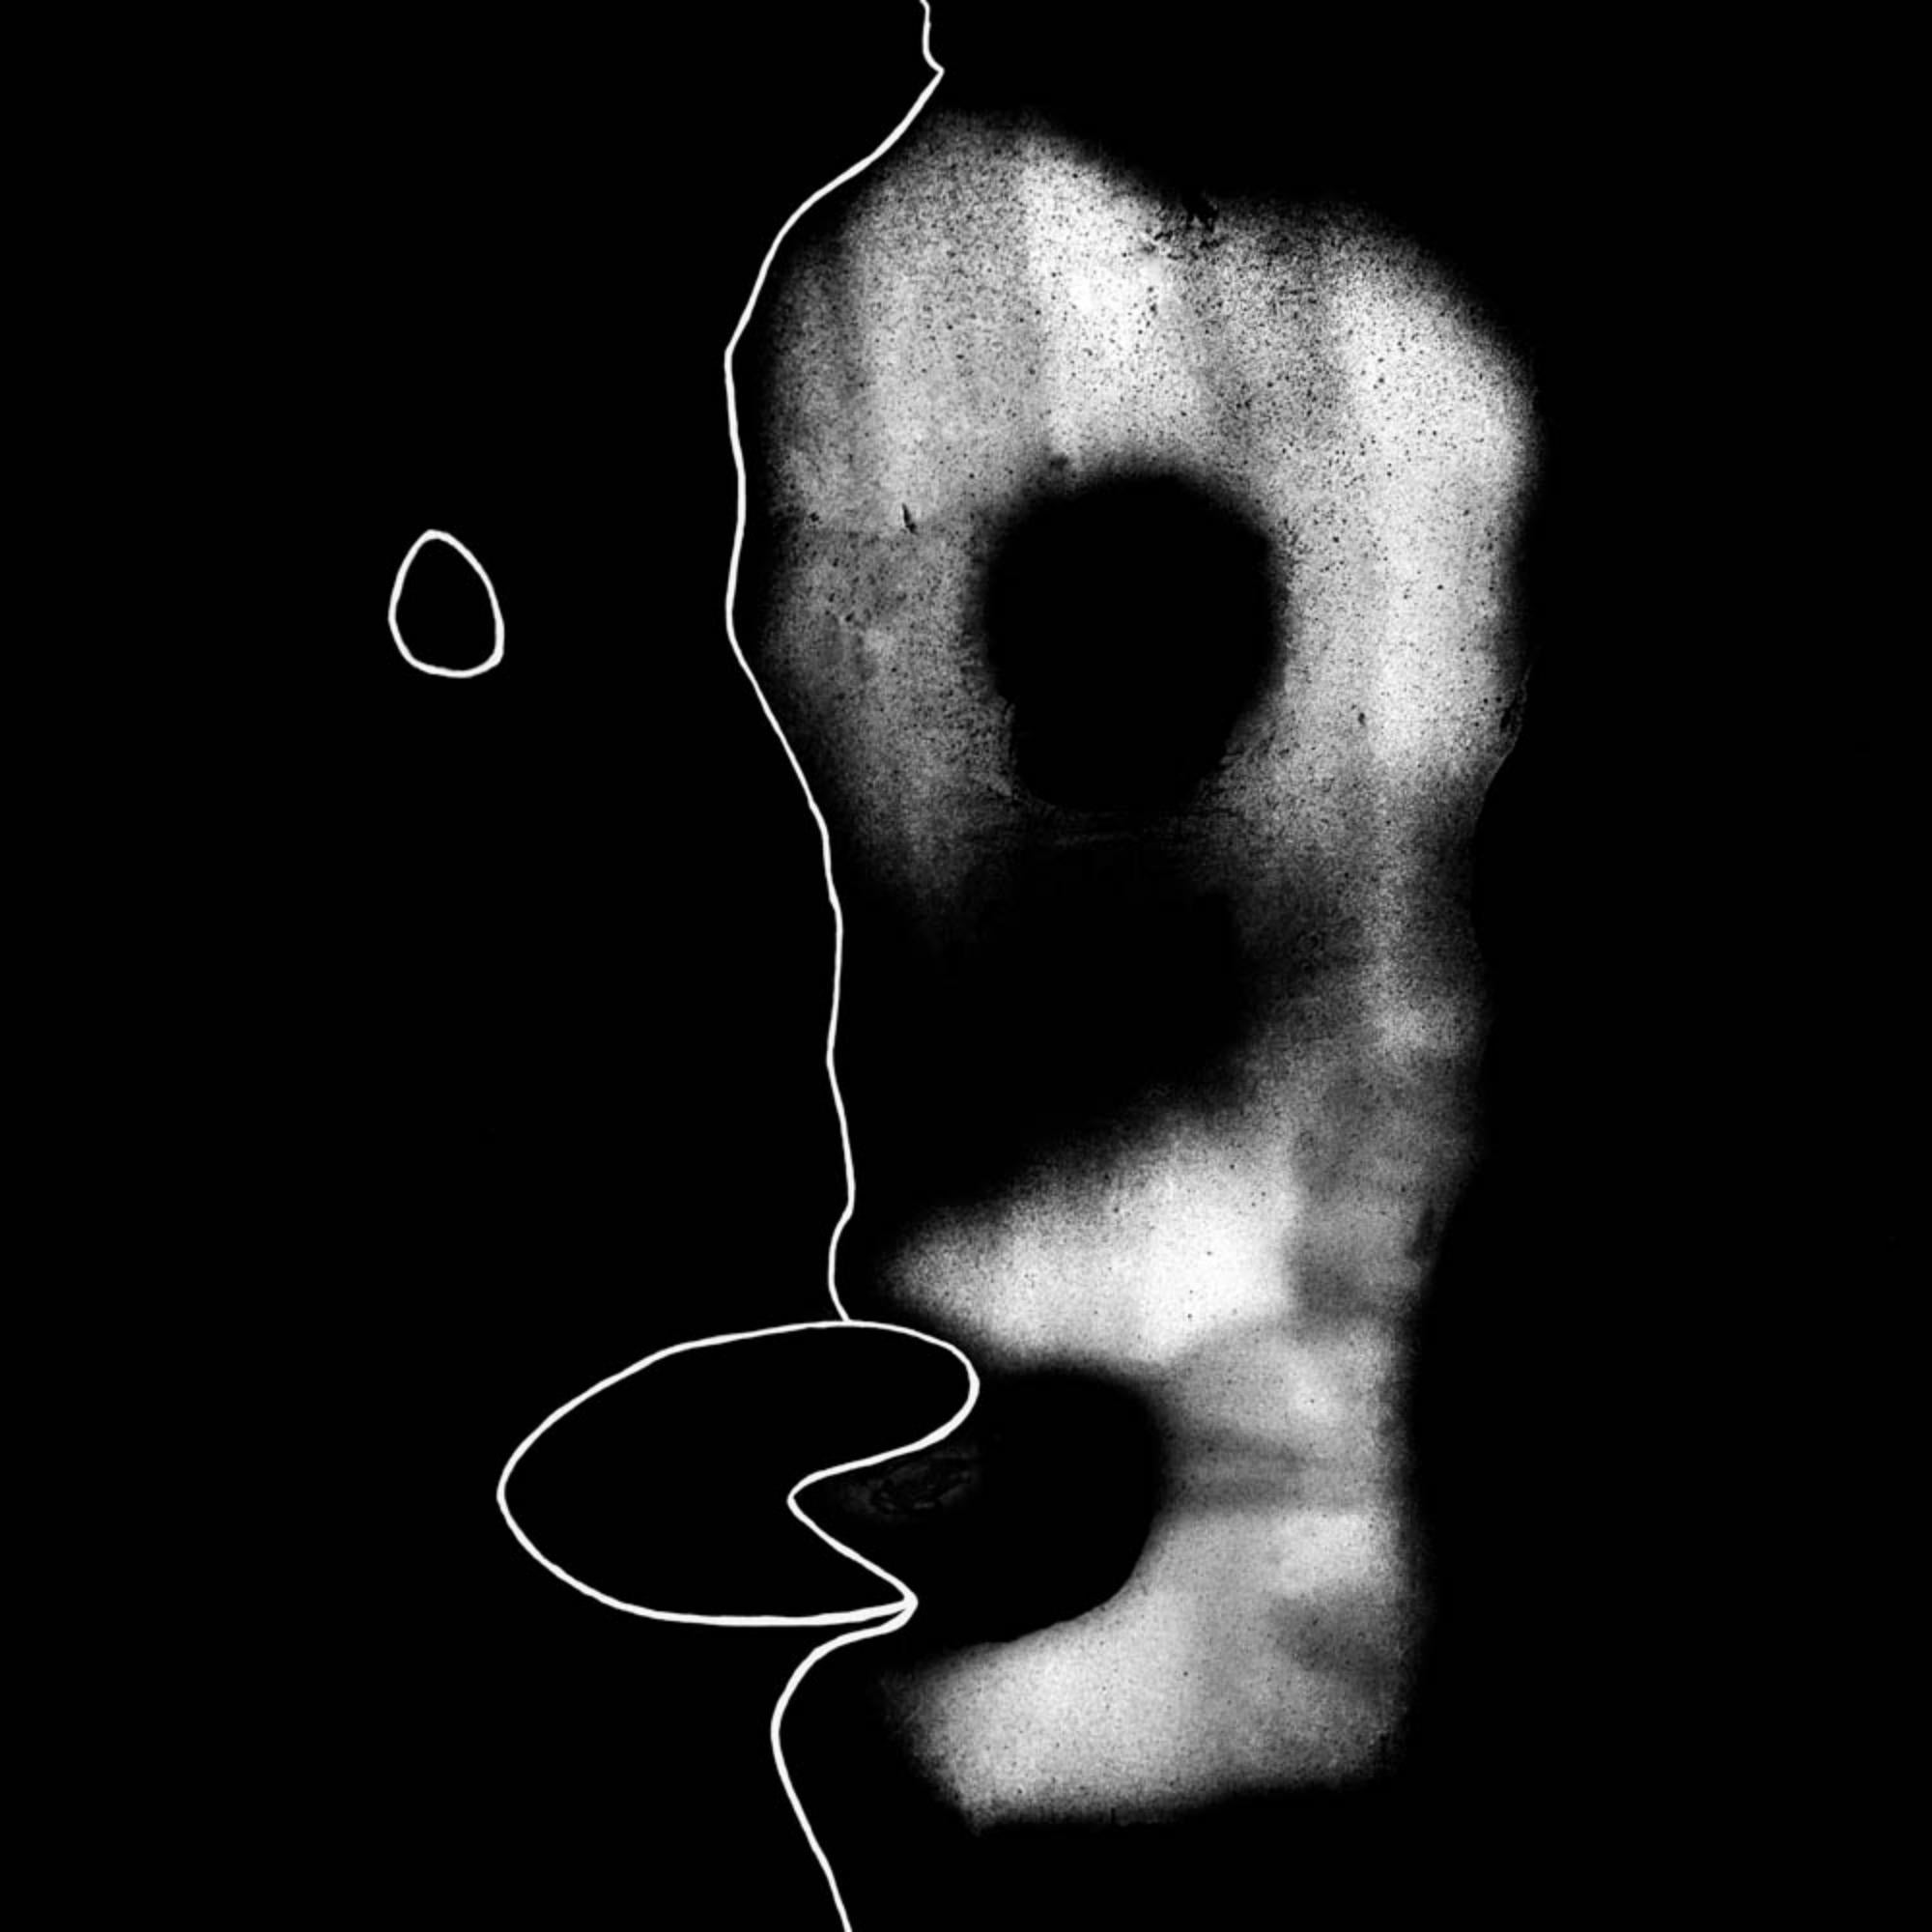 Divided Self - Roger Ballen, noir et blanc, mise en scène, Lightbox, Biennale de Venise